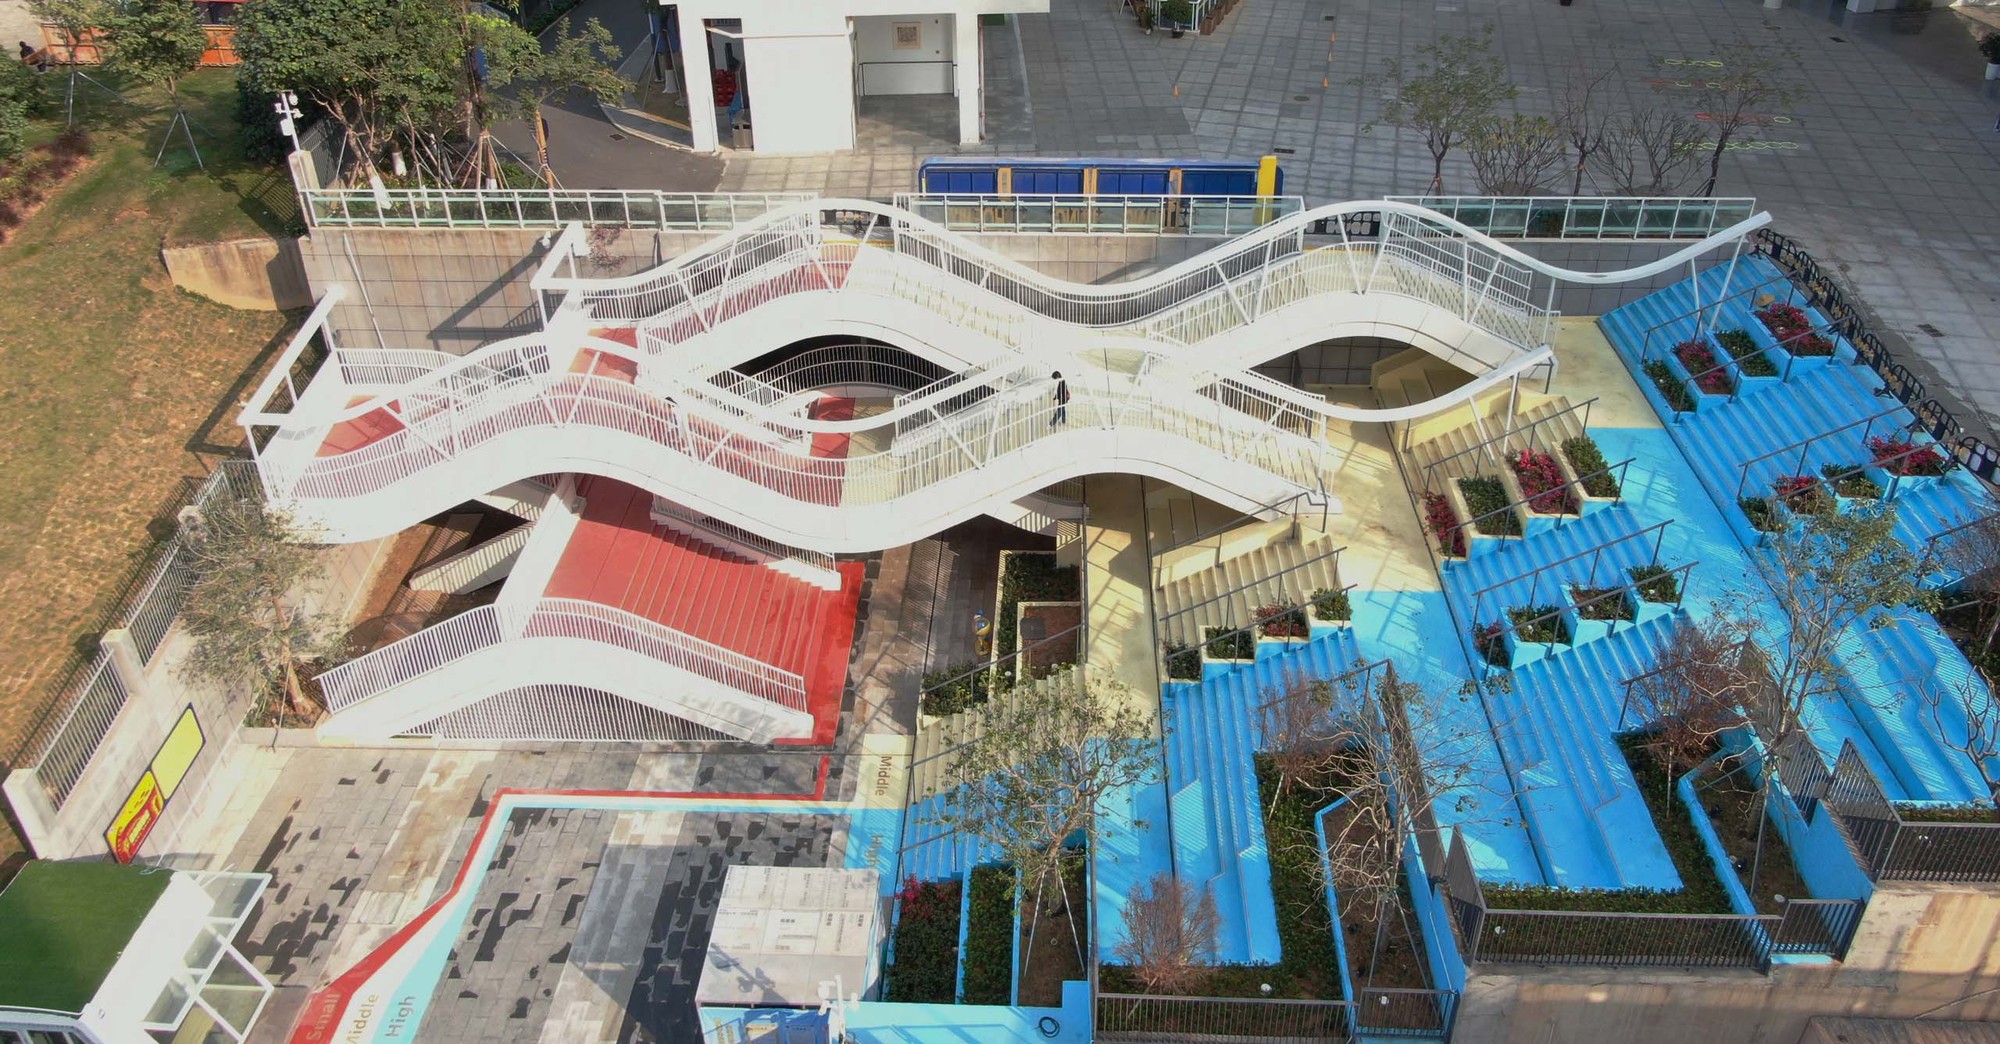 2_05-西门廊桥鸟瞰_Aerial_view_©深圳市同济人建筑设计有限公司.jpg